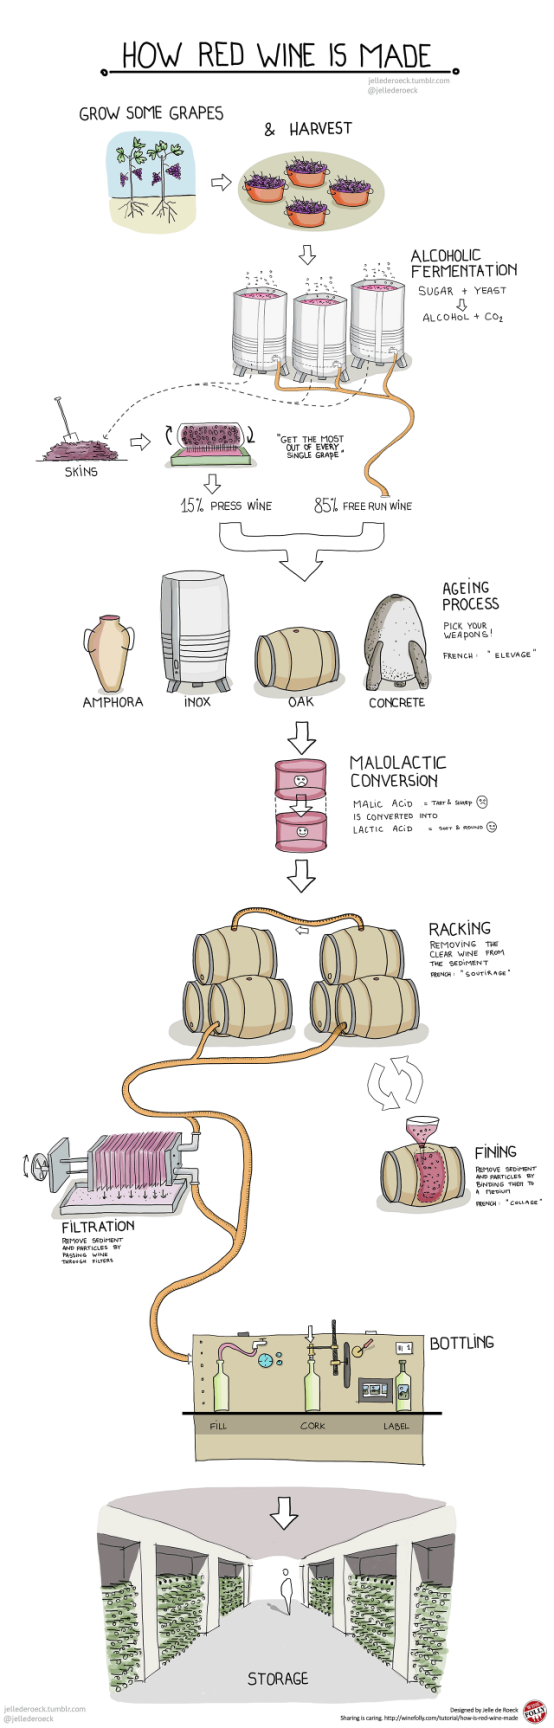 红葡萄酒酿造的基本工艺流程「干货」-1